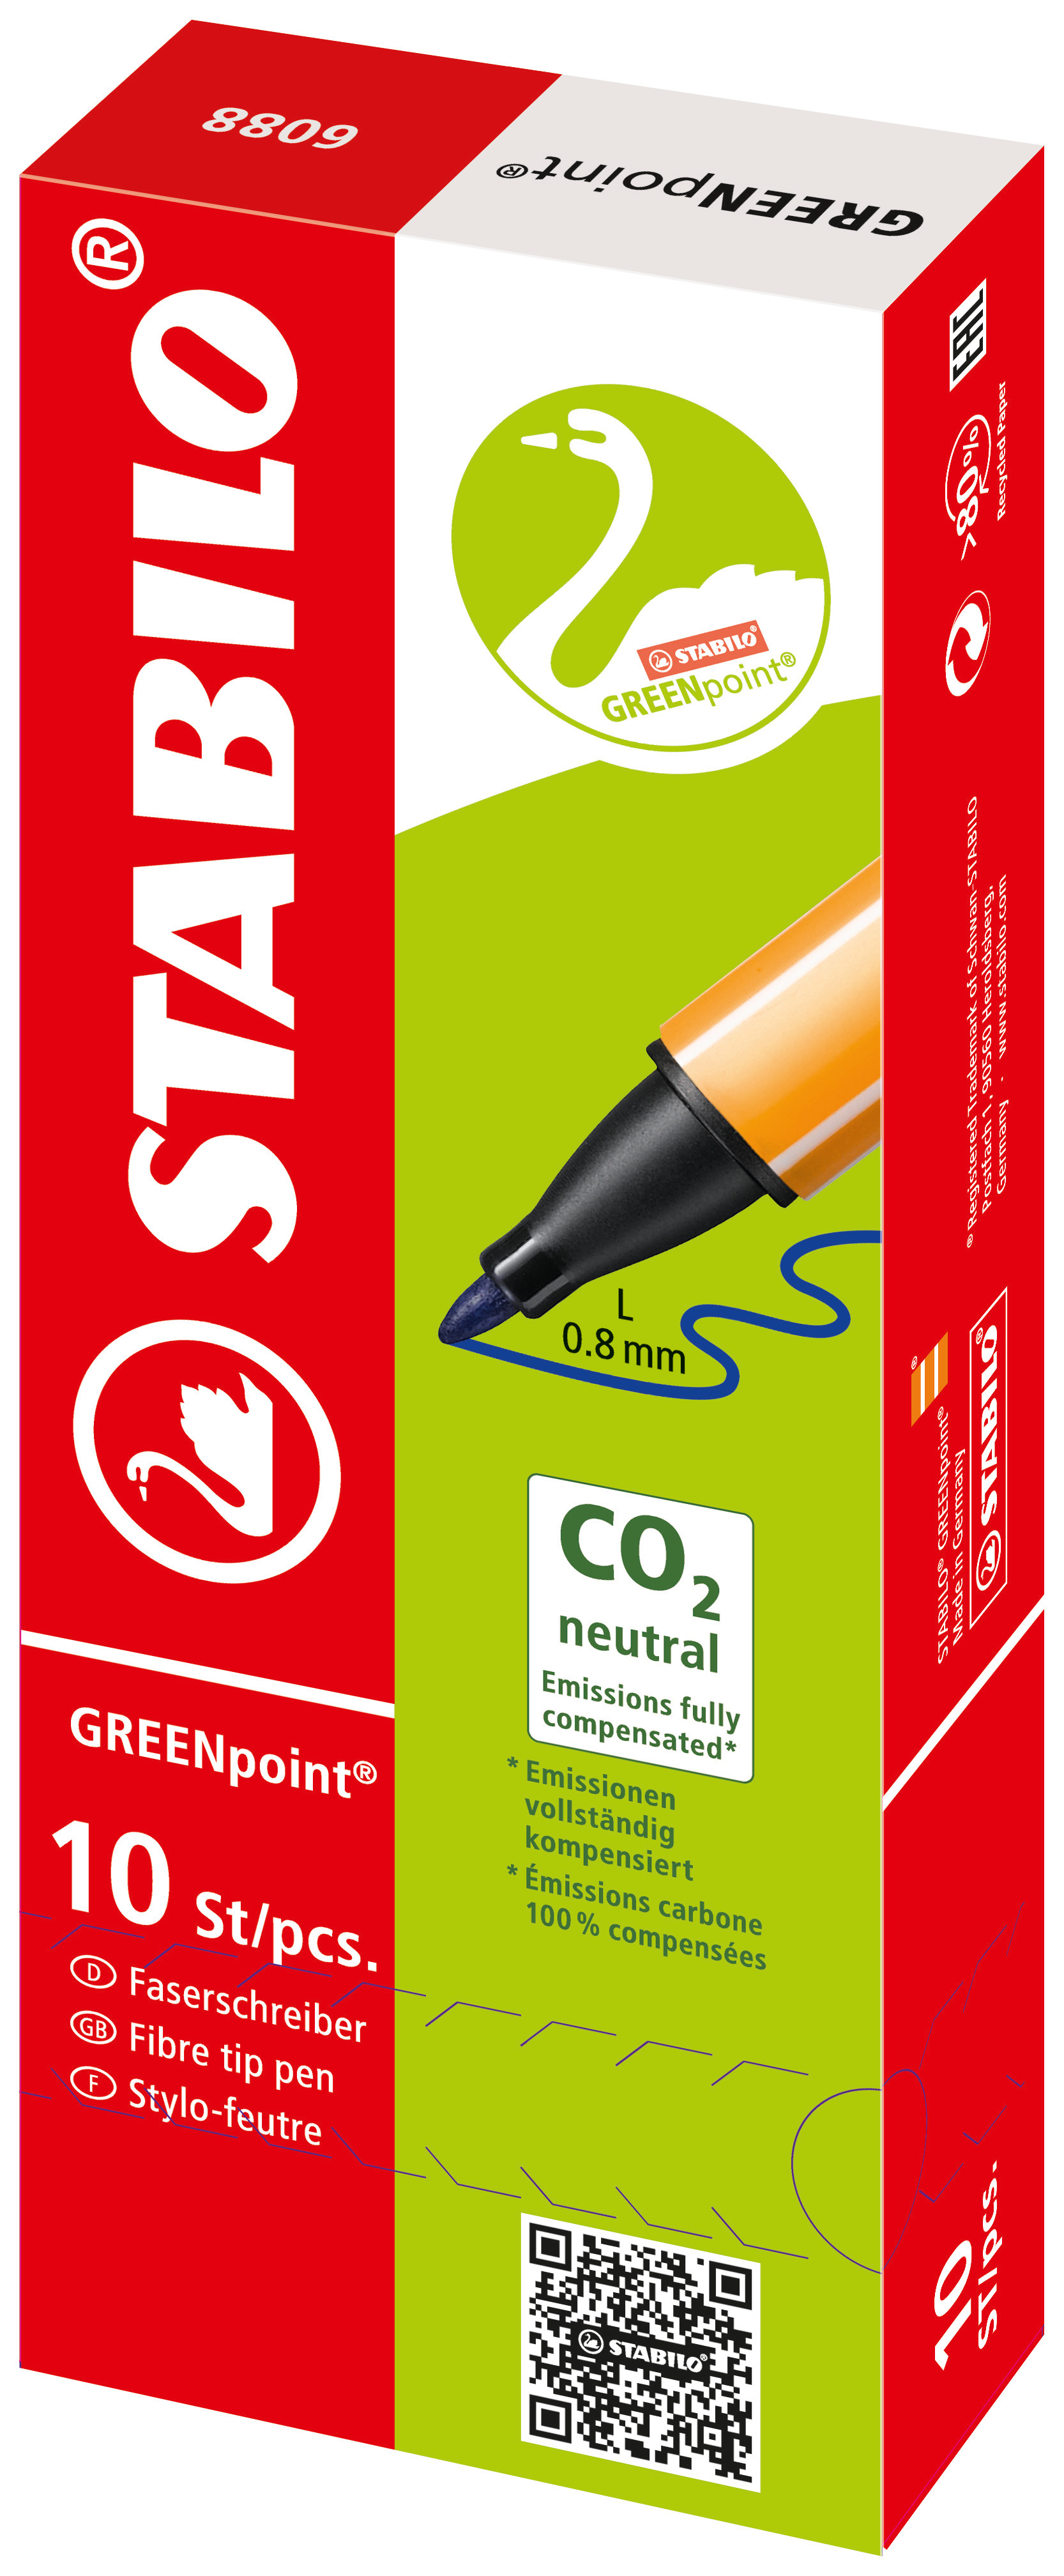 Faserschreiber, GREENpoint, 0,8 mm, Schreibfarbe: grün